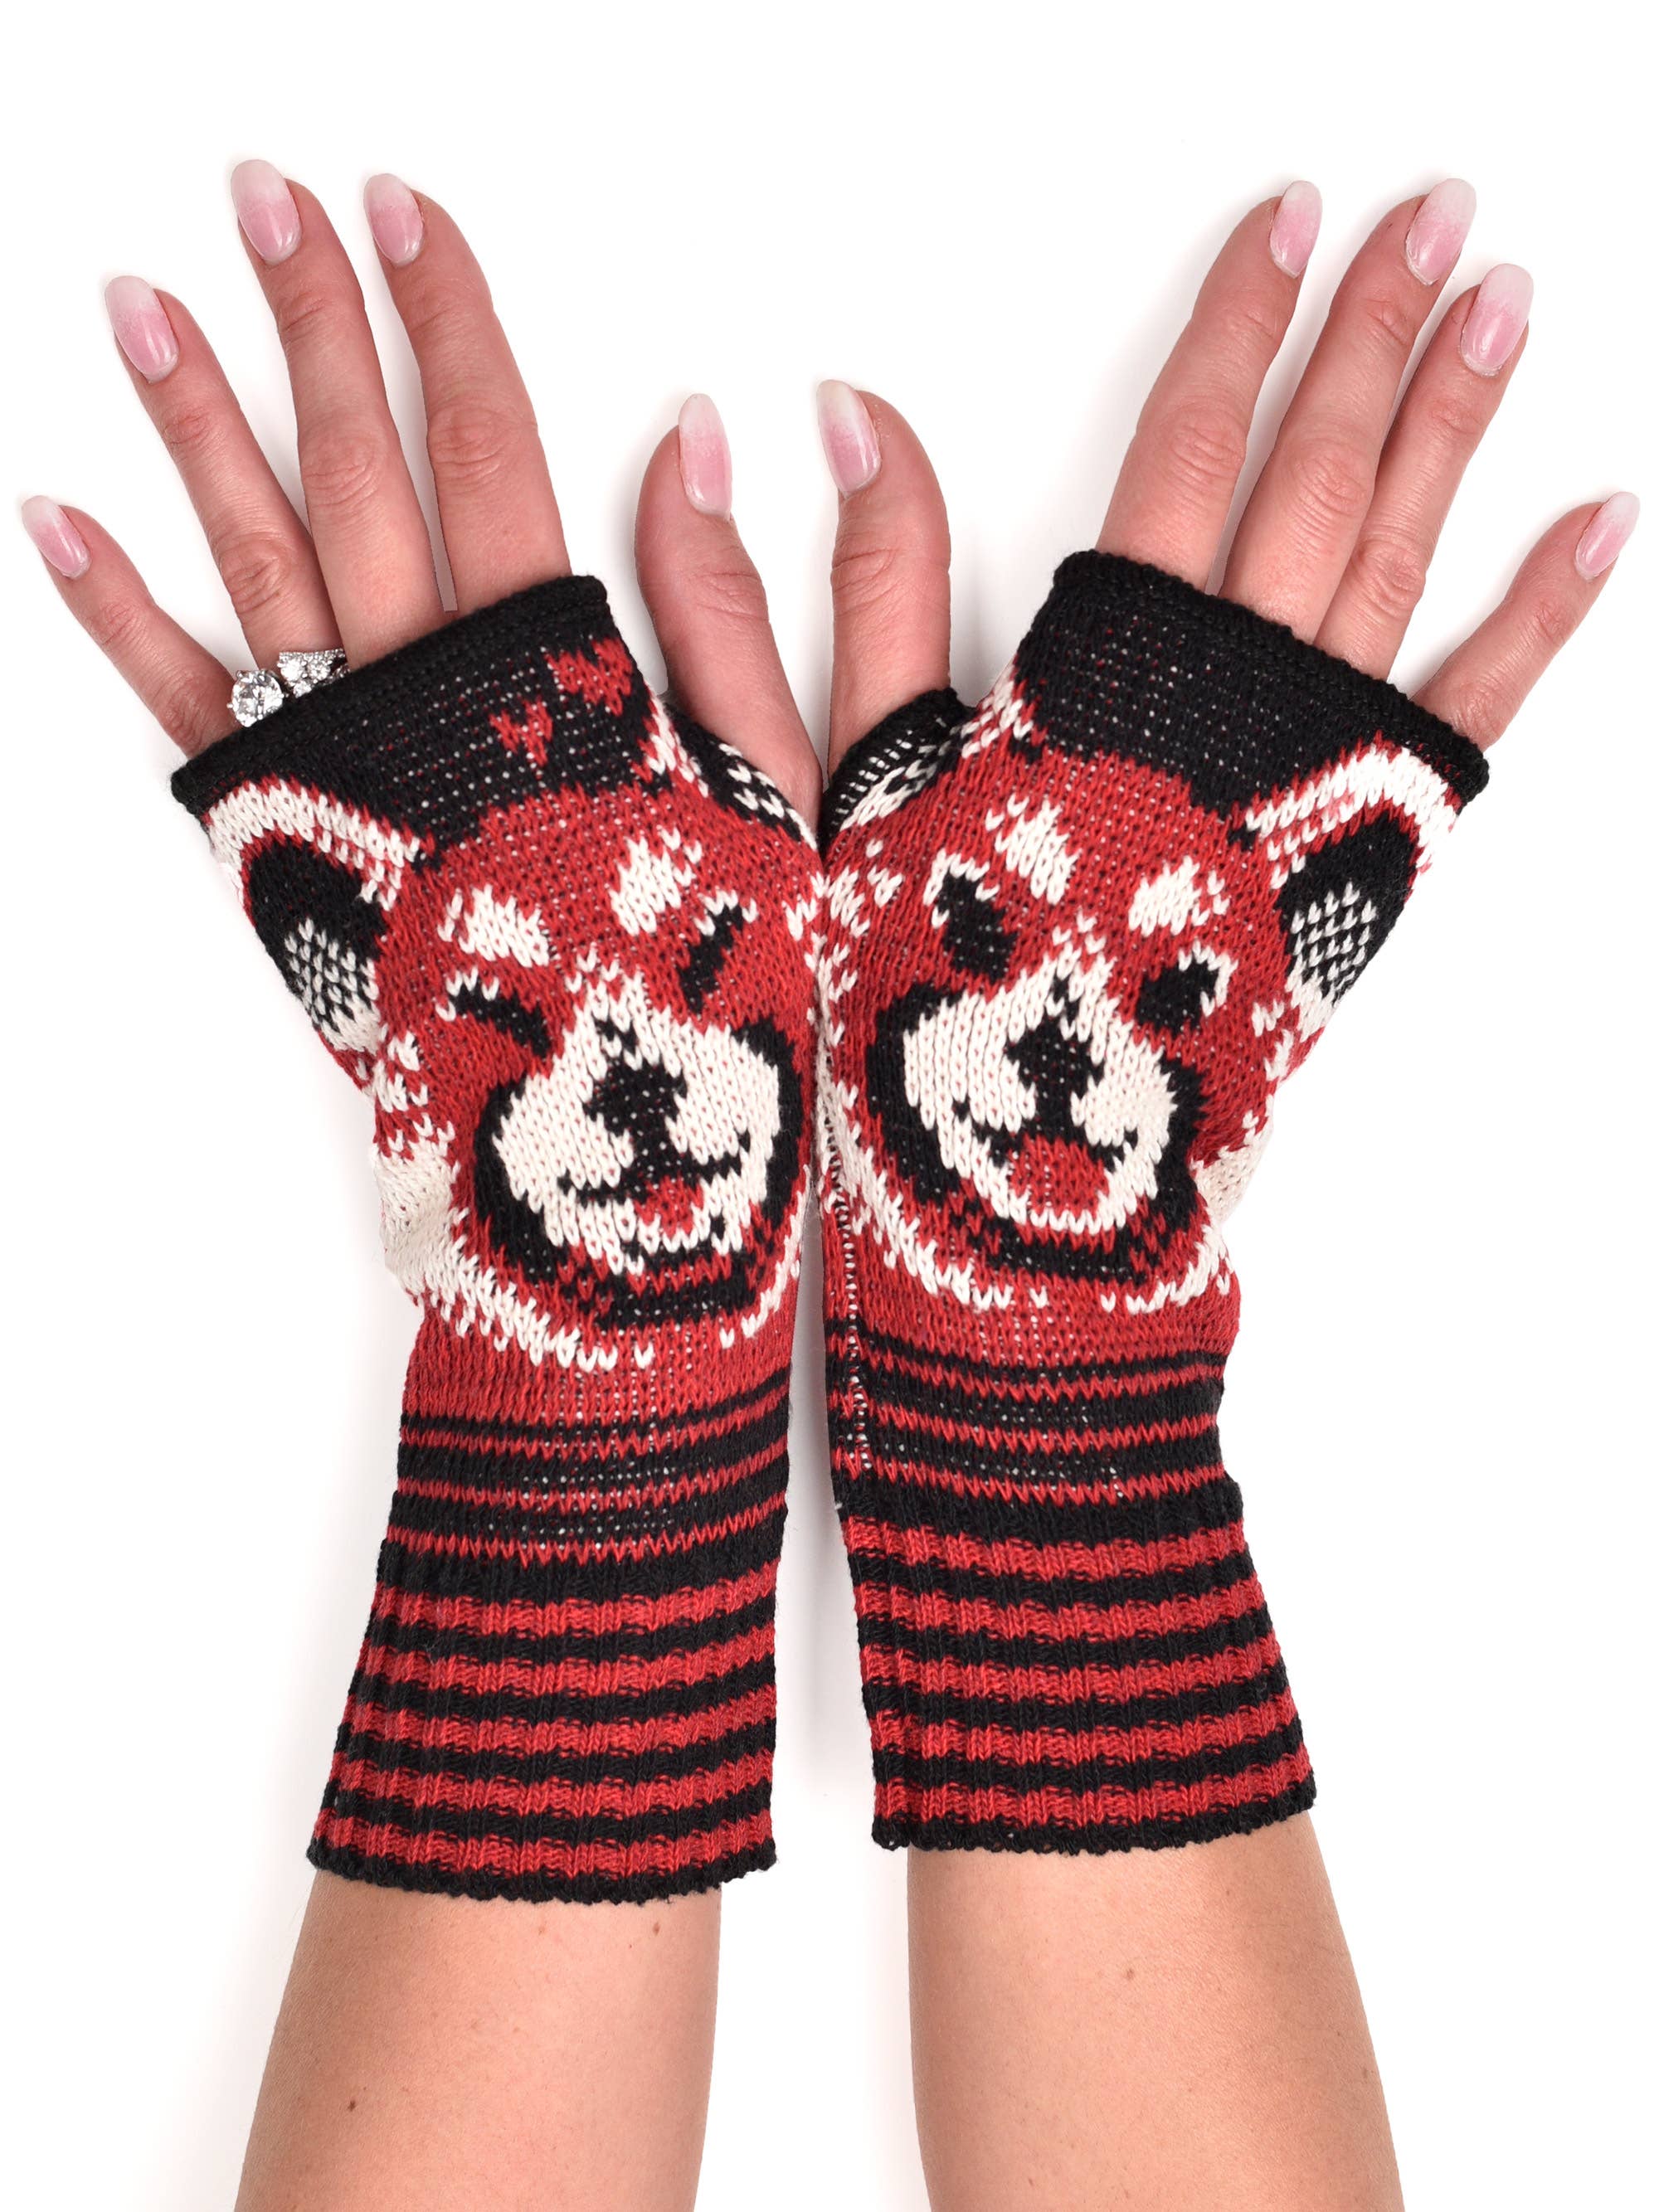 Accesorios Guantes y manoplas Guantes de invierno guantes sin dedos para mujeres guantes de lana sin dedos guantes de invierno Guantes para mujeres guantes sin dedos tejidos a mano 